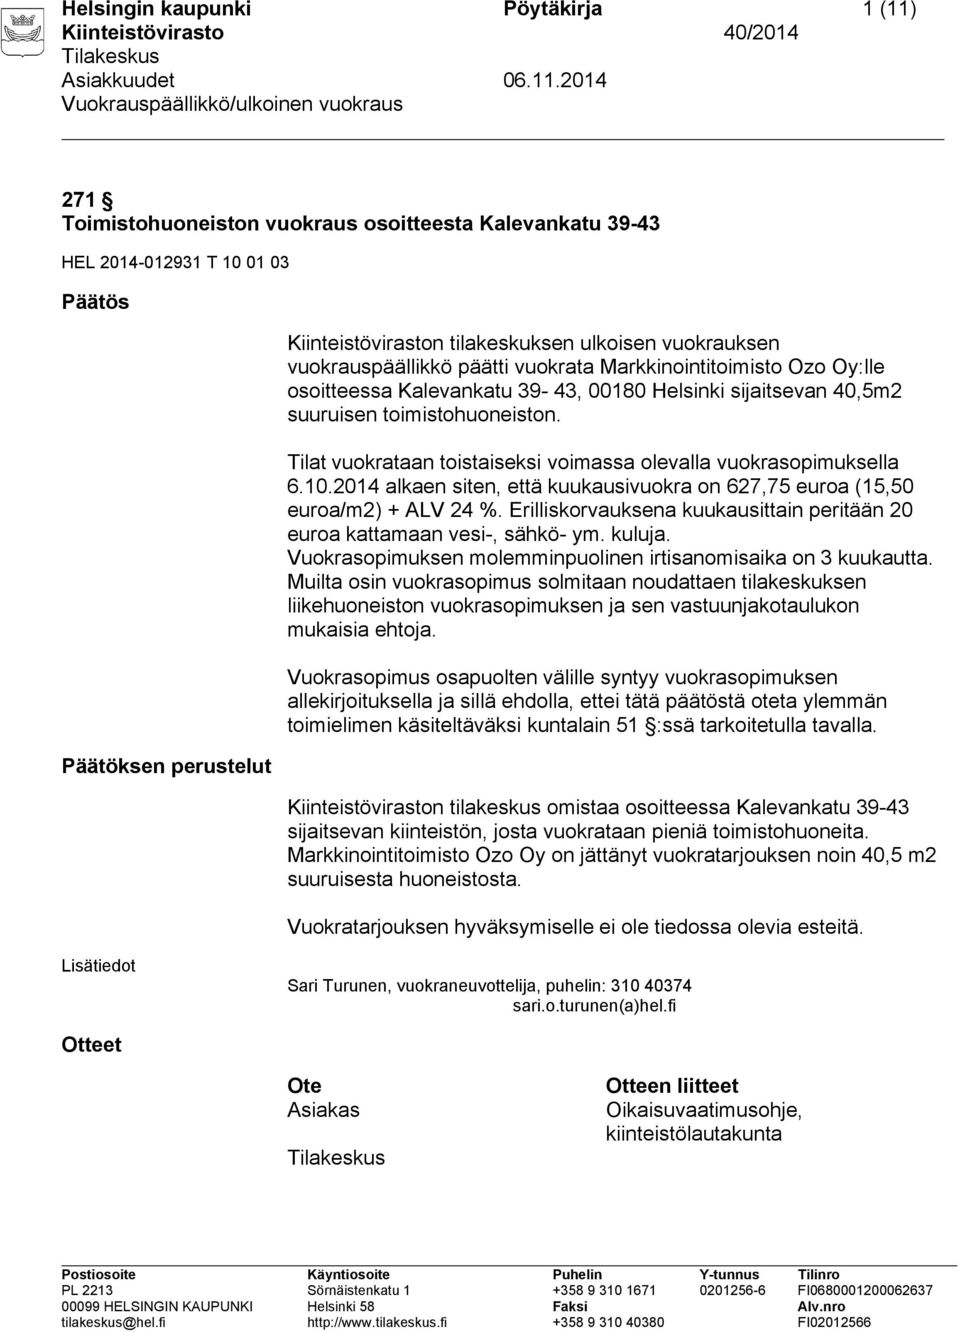 Tilat vuokrataan toistaiseksi voimassa olevalla vuokrasopimuksella 6.10.2014 alkaen siten, että kuukausivuokra on 627,75 euroa (15,50 euroa/m2) + ALV 24 %.